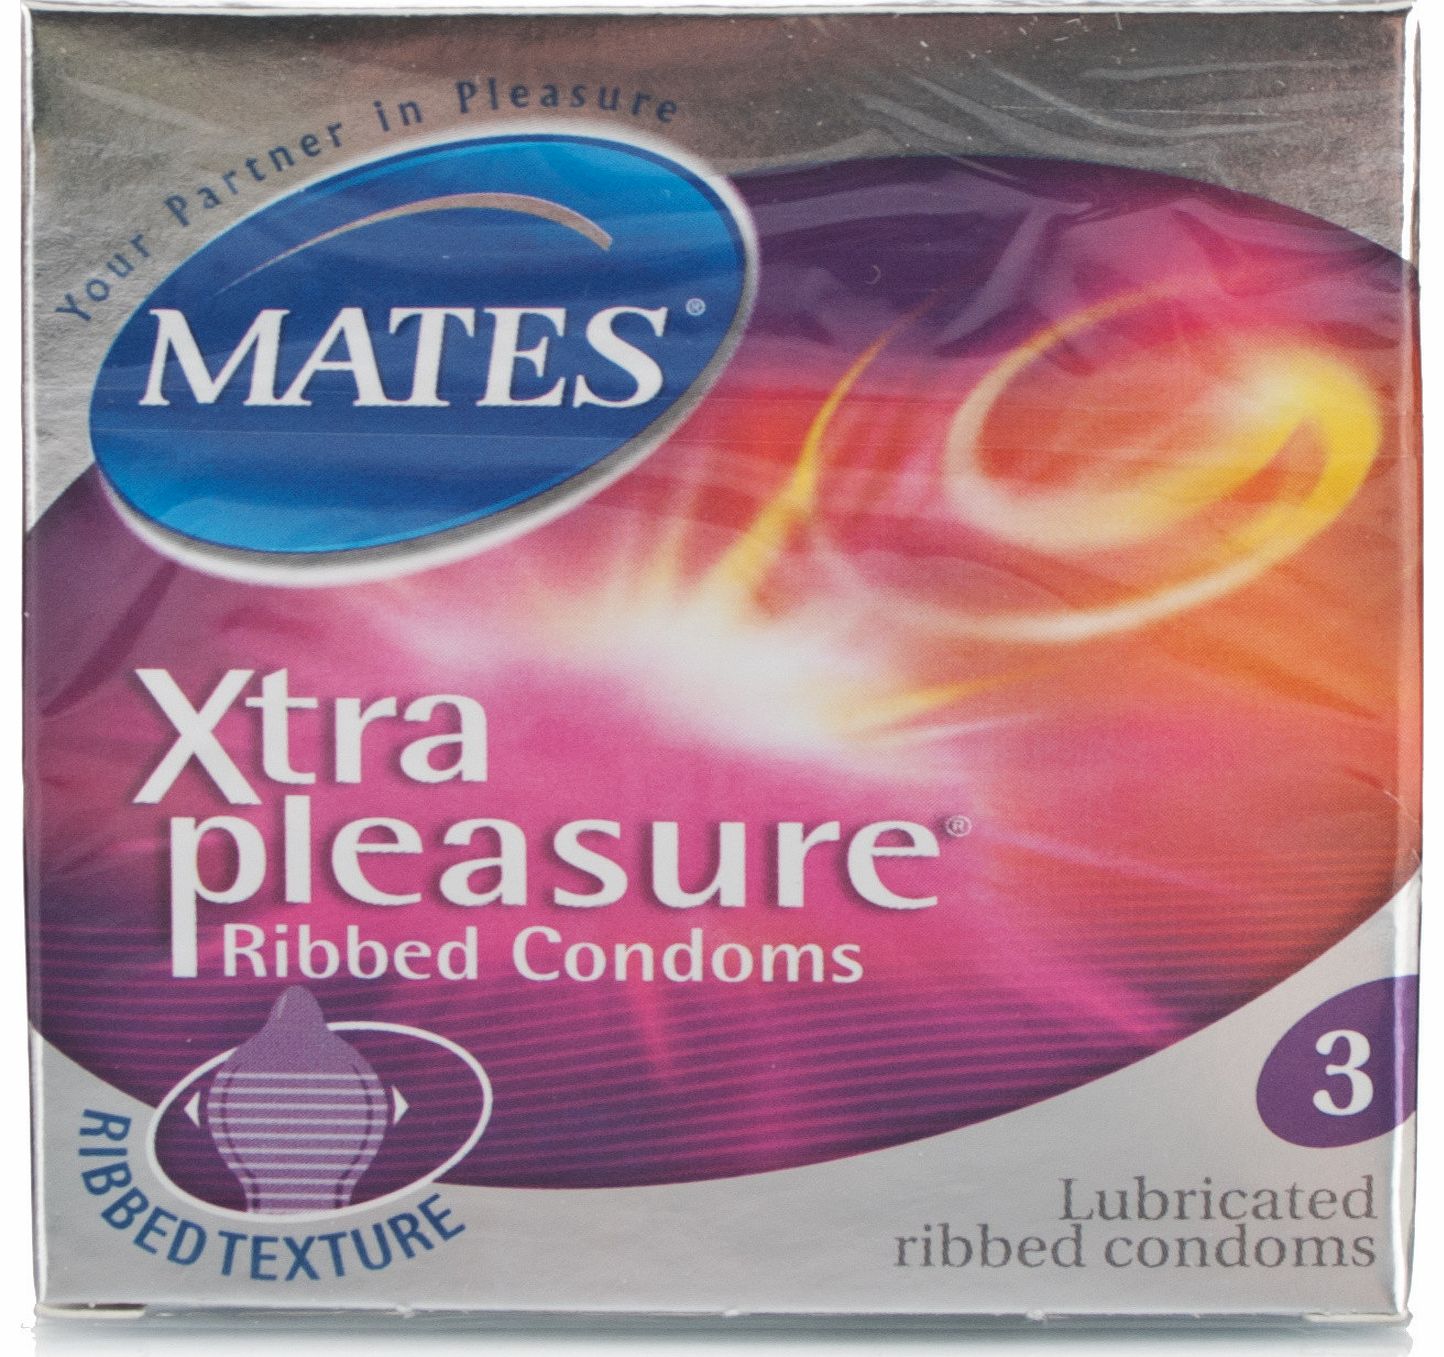 Mates Xtra Pleasure Condoms